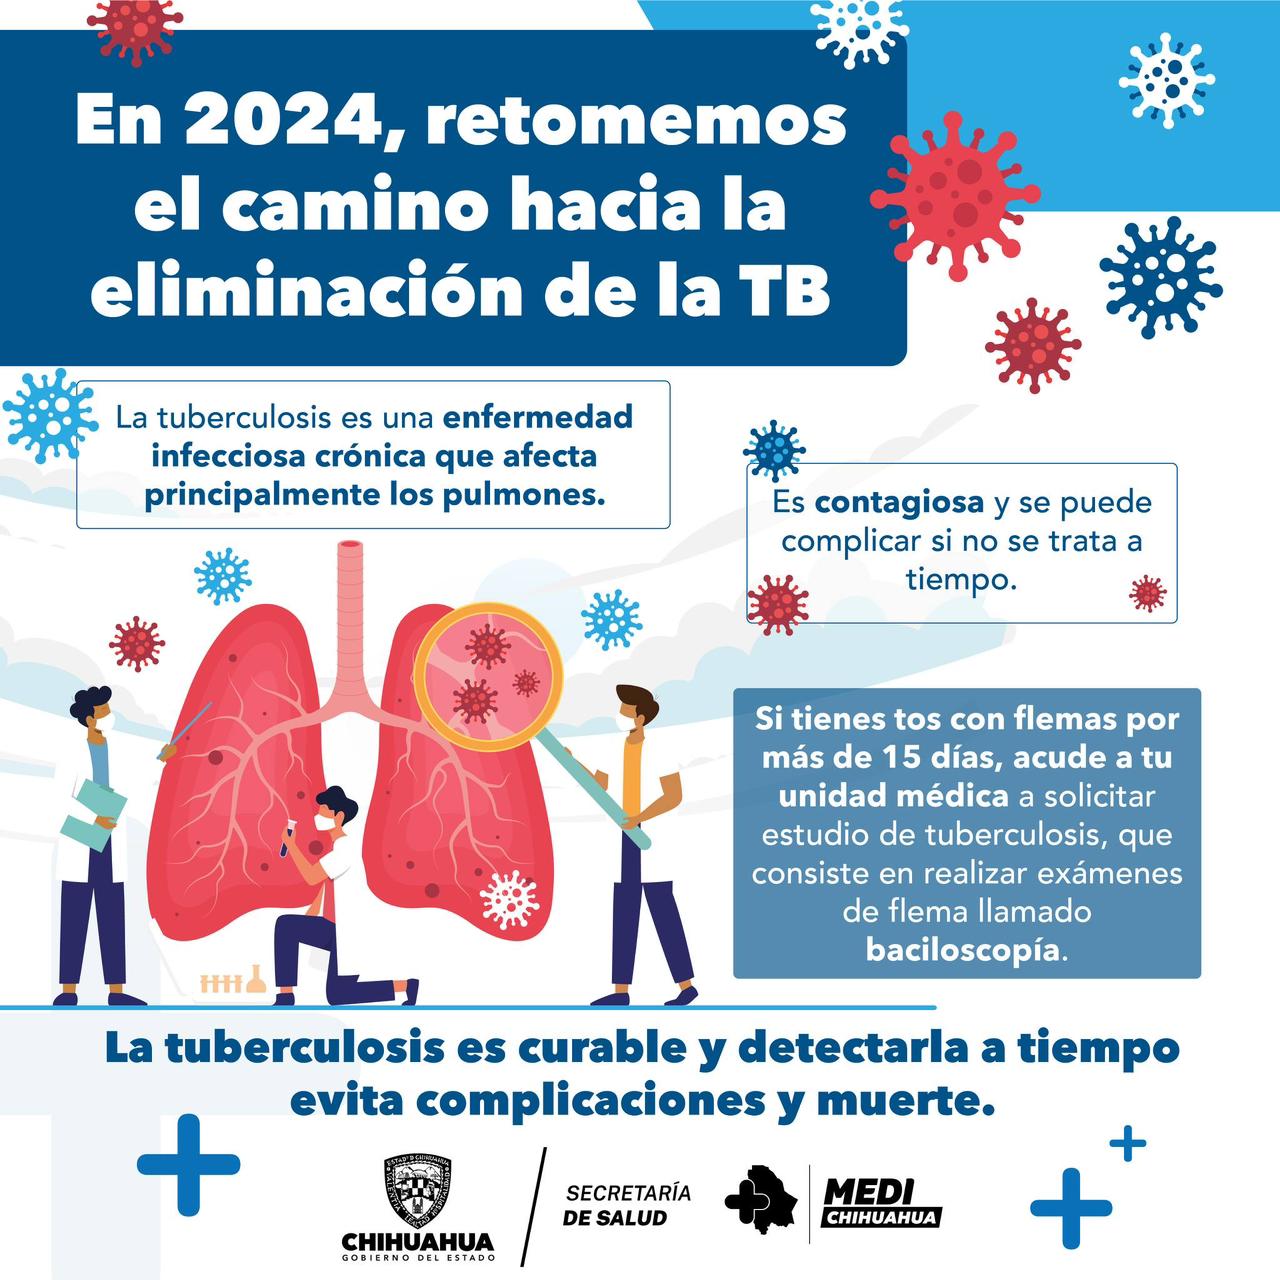 Exhorta Secretaría de Salud a seguir recomendaciones para prevenir contagio de tuberculosis